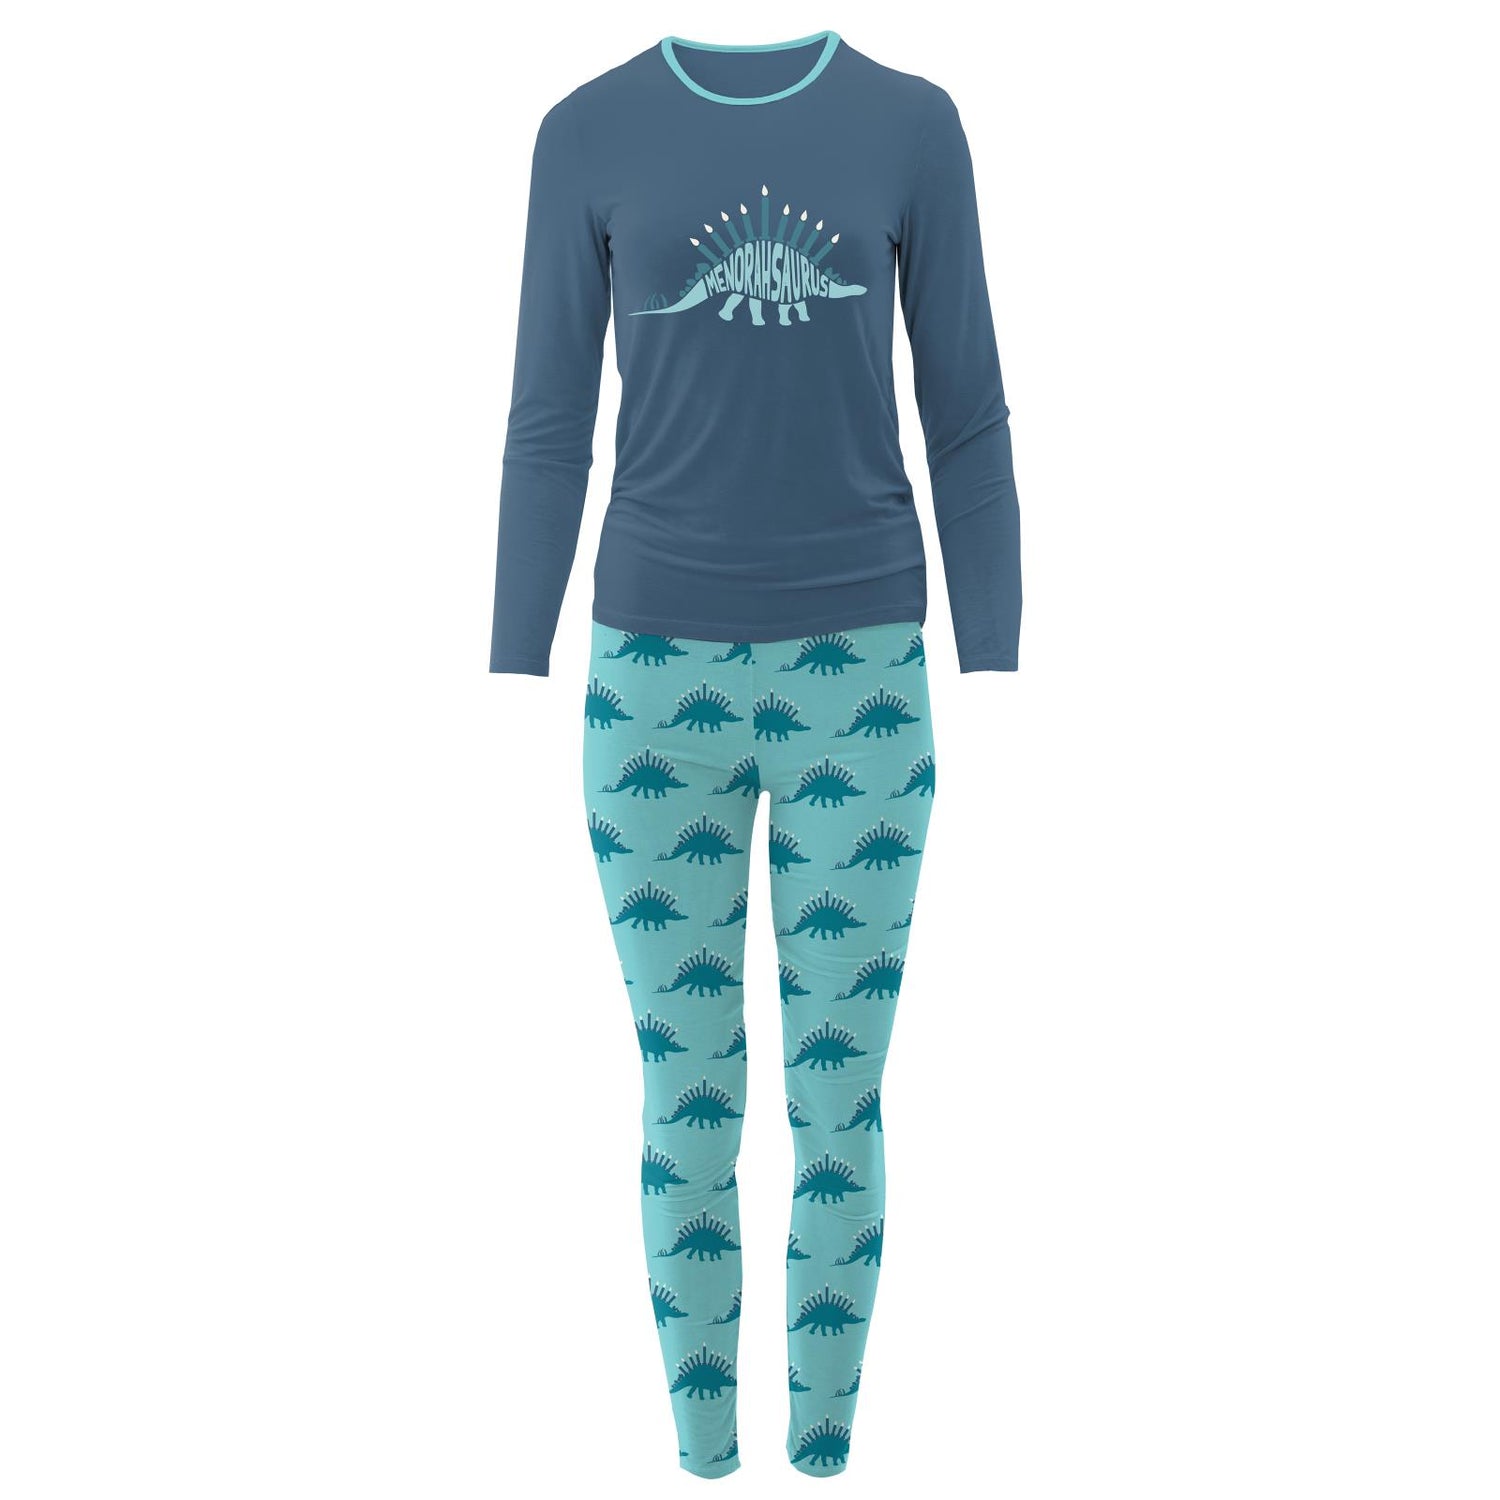 Women's Long Sleeve Fitted Graphic Tee Pajama Set in Iceberg Menorahsaurus